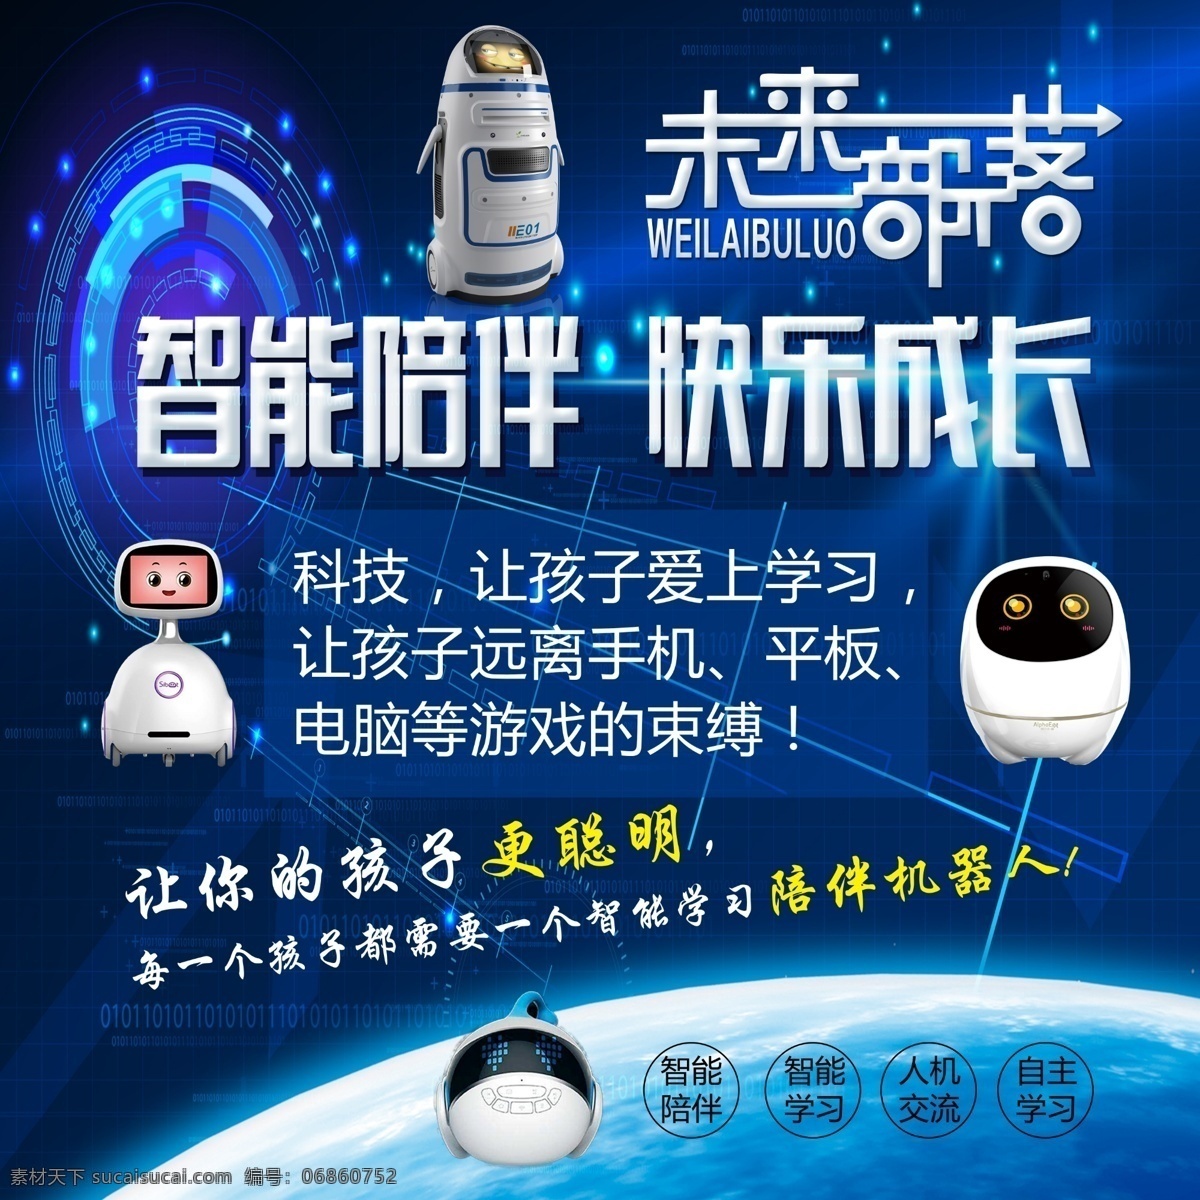 未来 部落 机器人 未来部落 机器人海报 机器人背景 机器人宣传画 海报展板